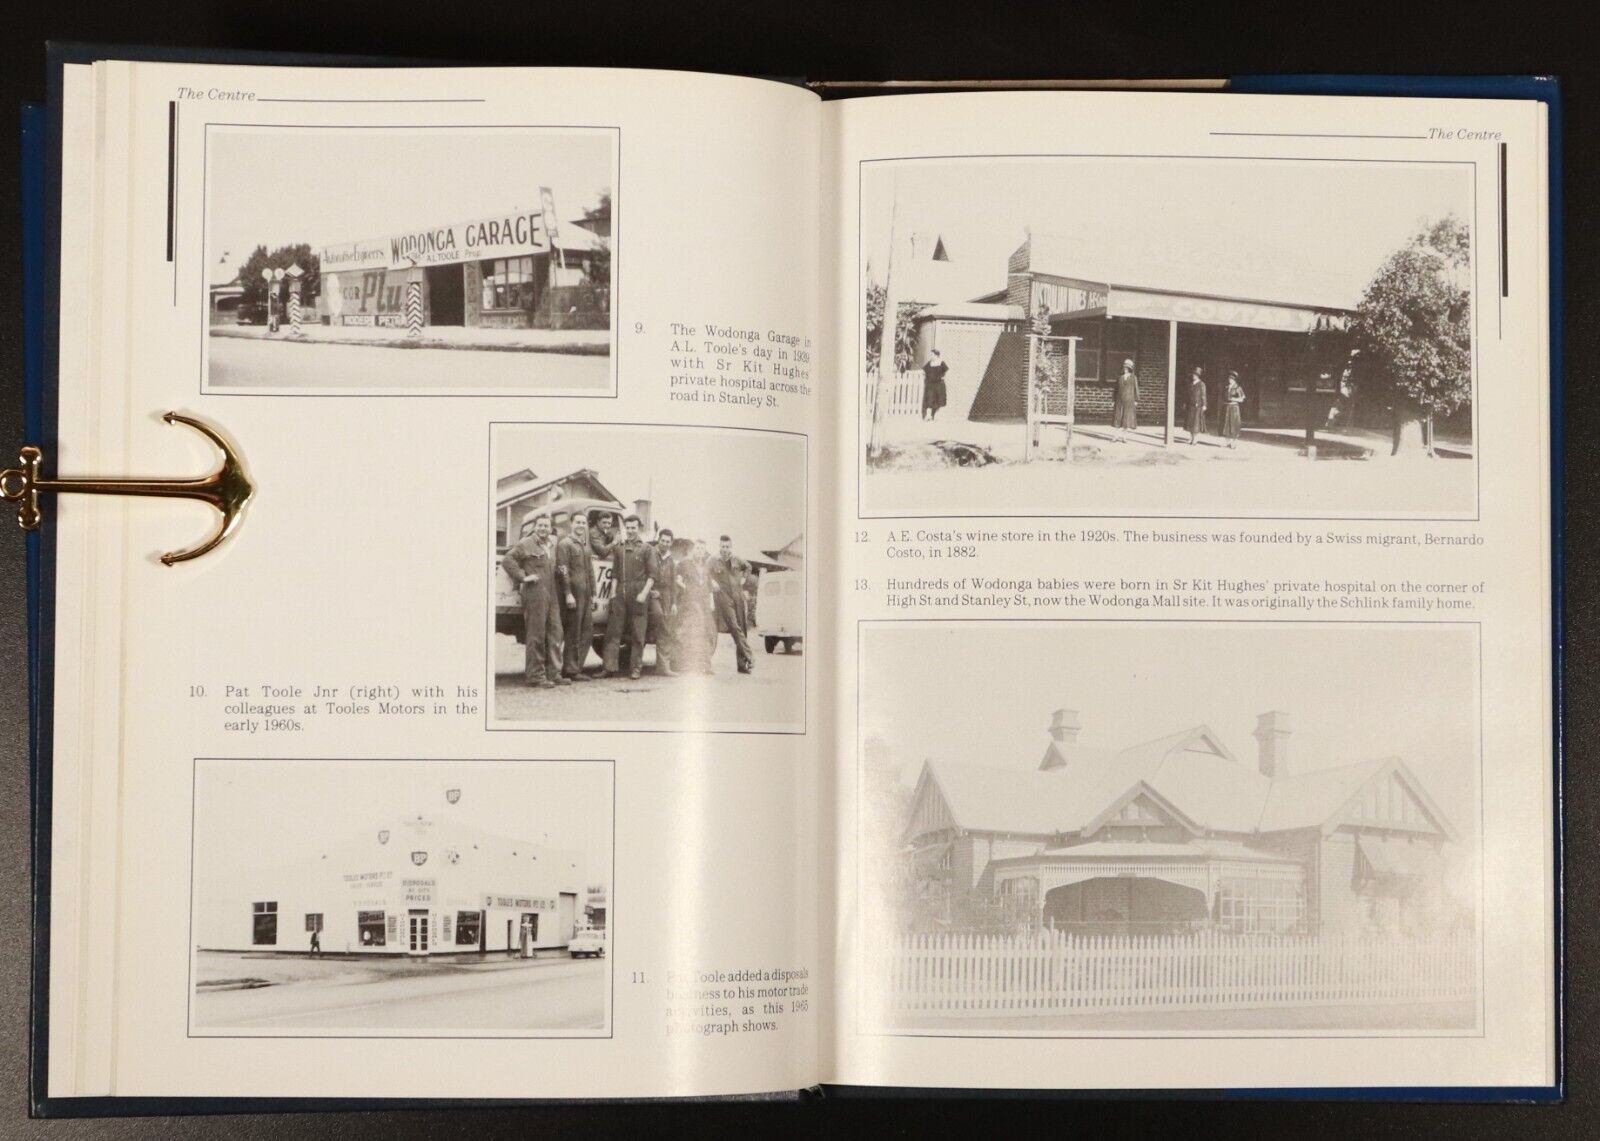 1989 Wodonga Yesterday by Howard C. Jones Australian Local History Book